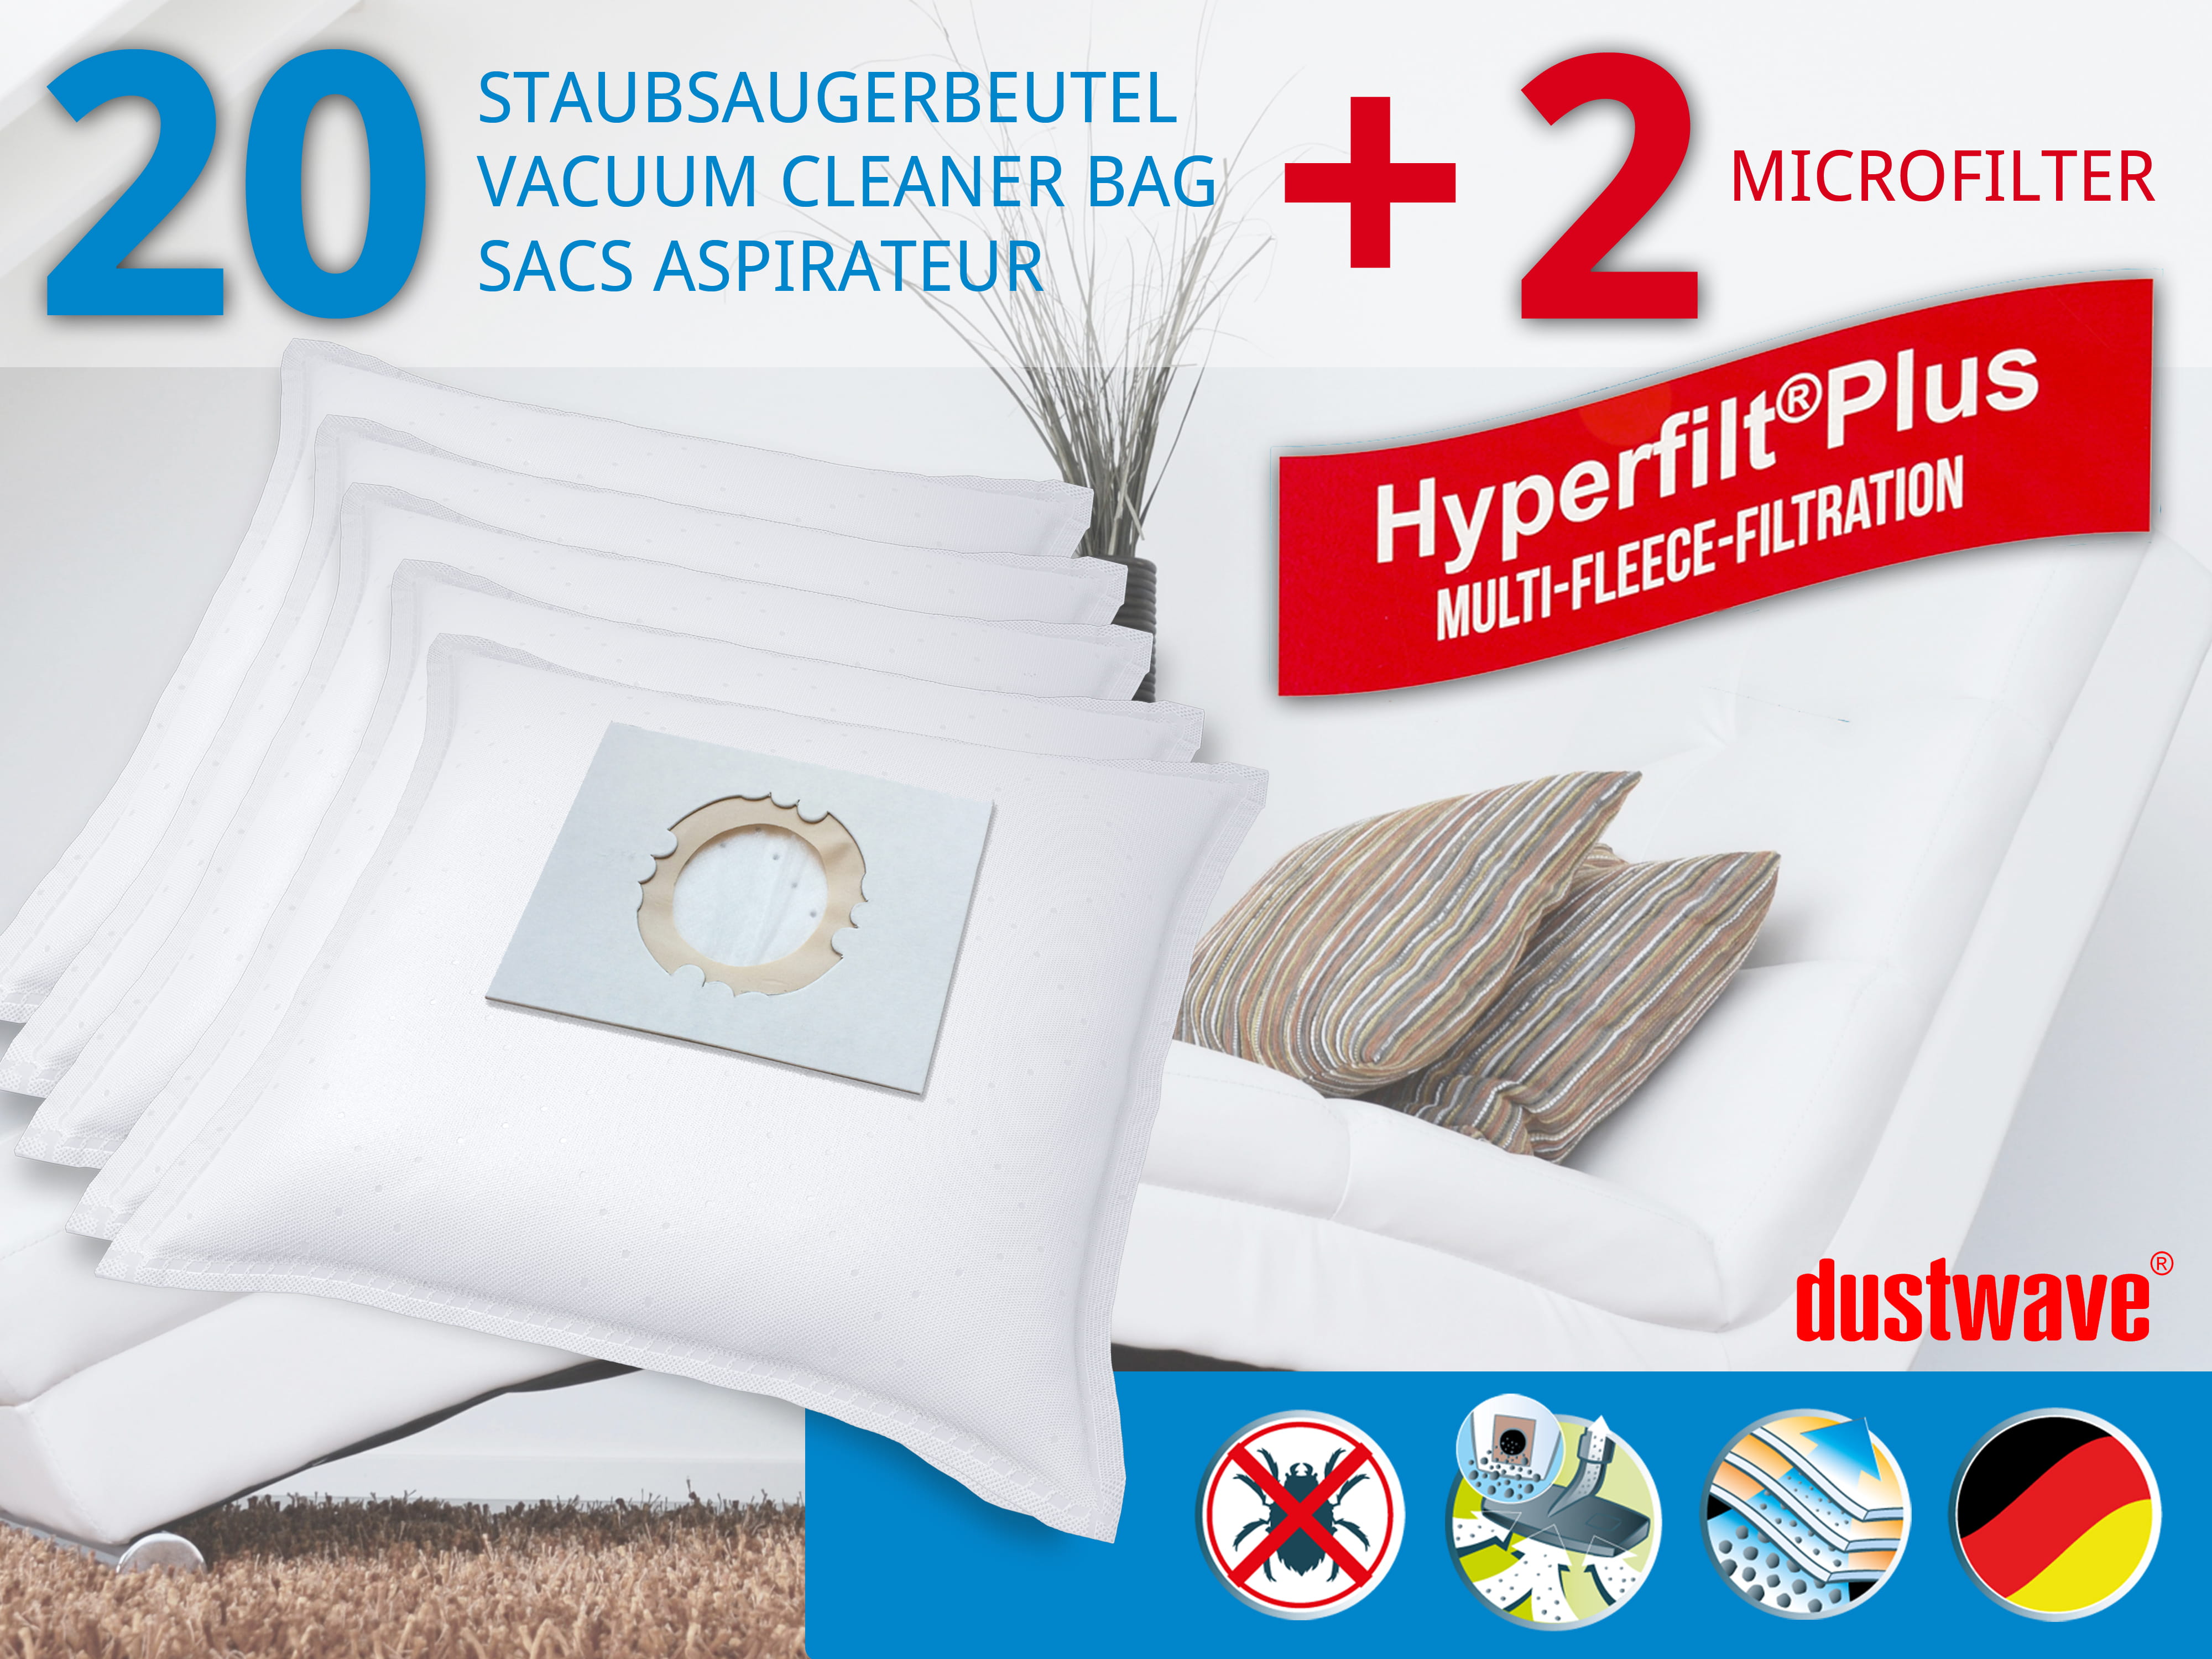 Dustwave® 20 Staubsaugerbeutel für Hoover S4508 Aqua Master - hocheffizient, mehrlagiges Mikrovlies mit Hygieneverschluss - Made in Germany